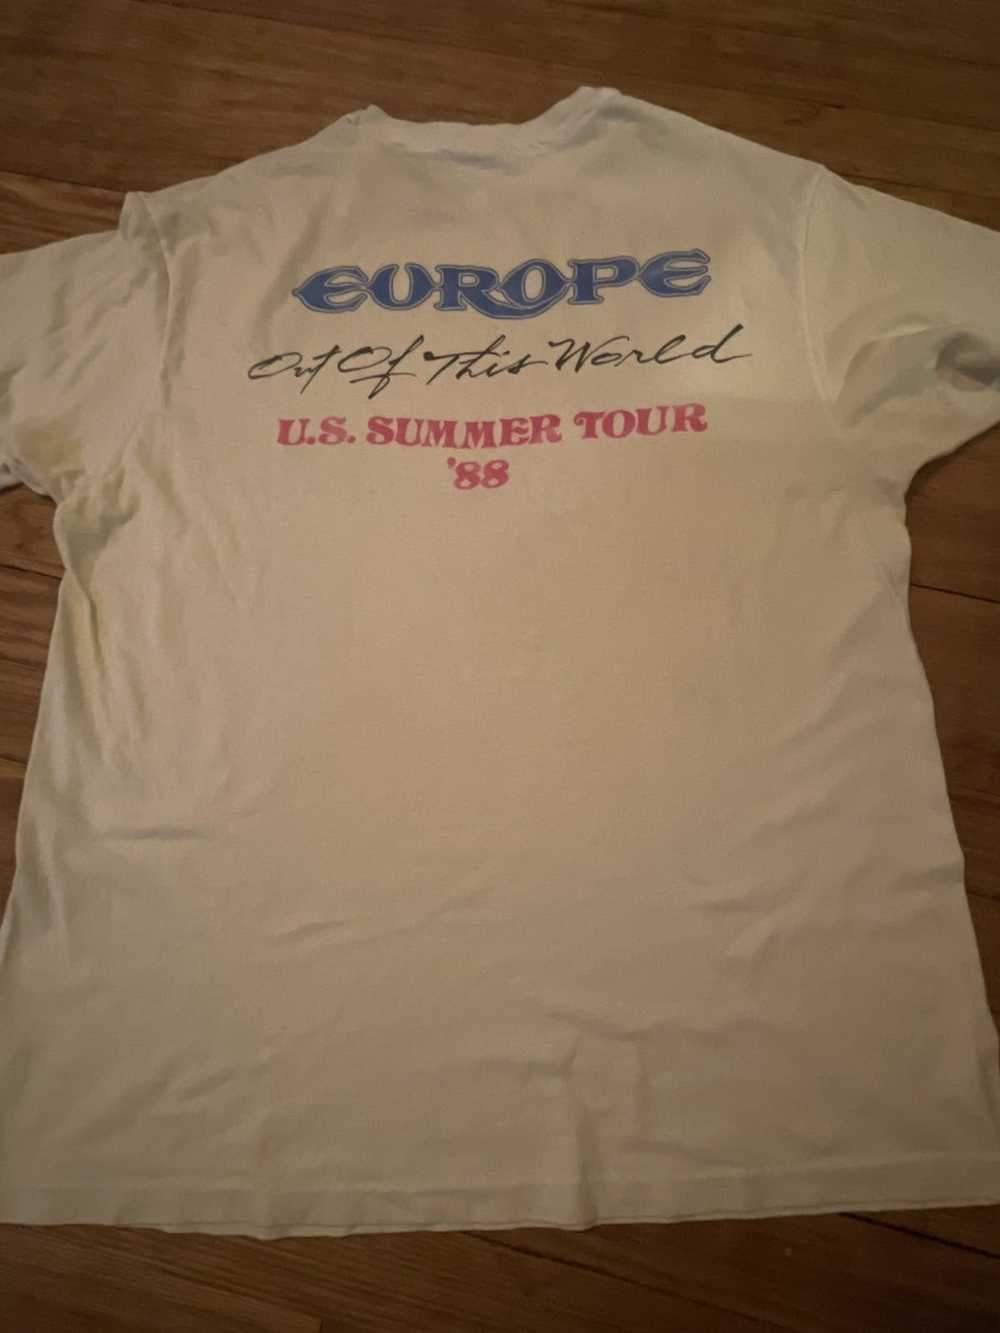 Band Tees × Rock Band × Rock T Shirt 88 Europe Su… - image 3